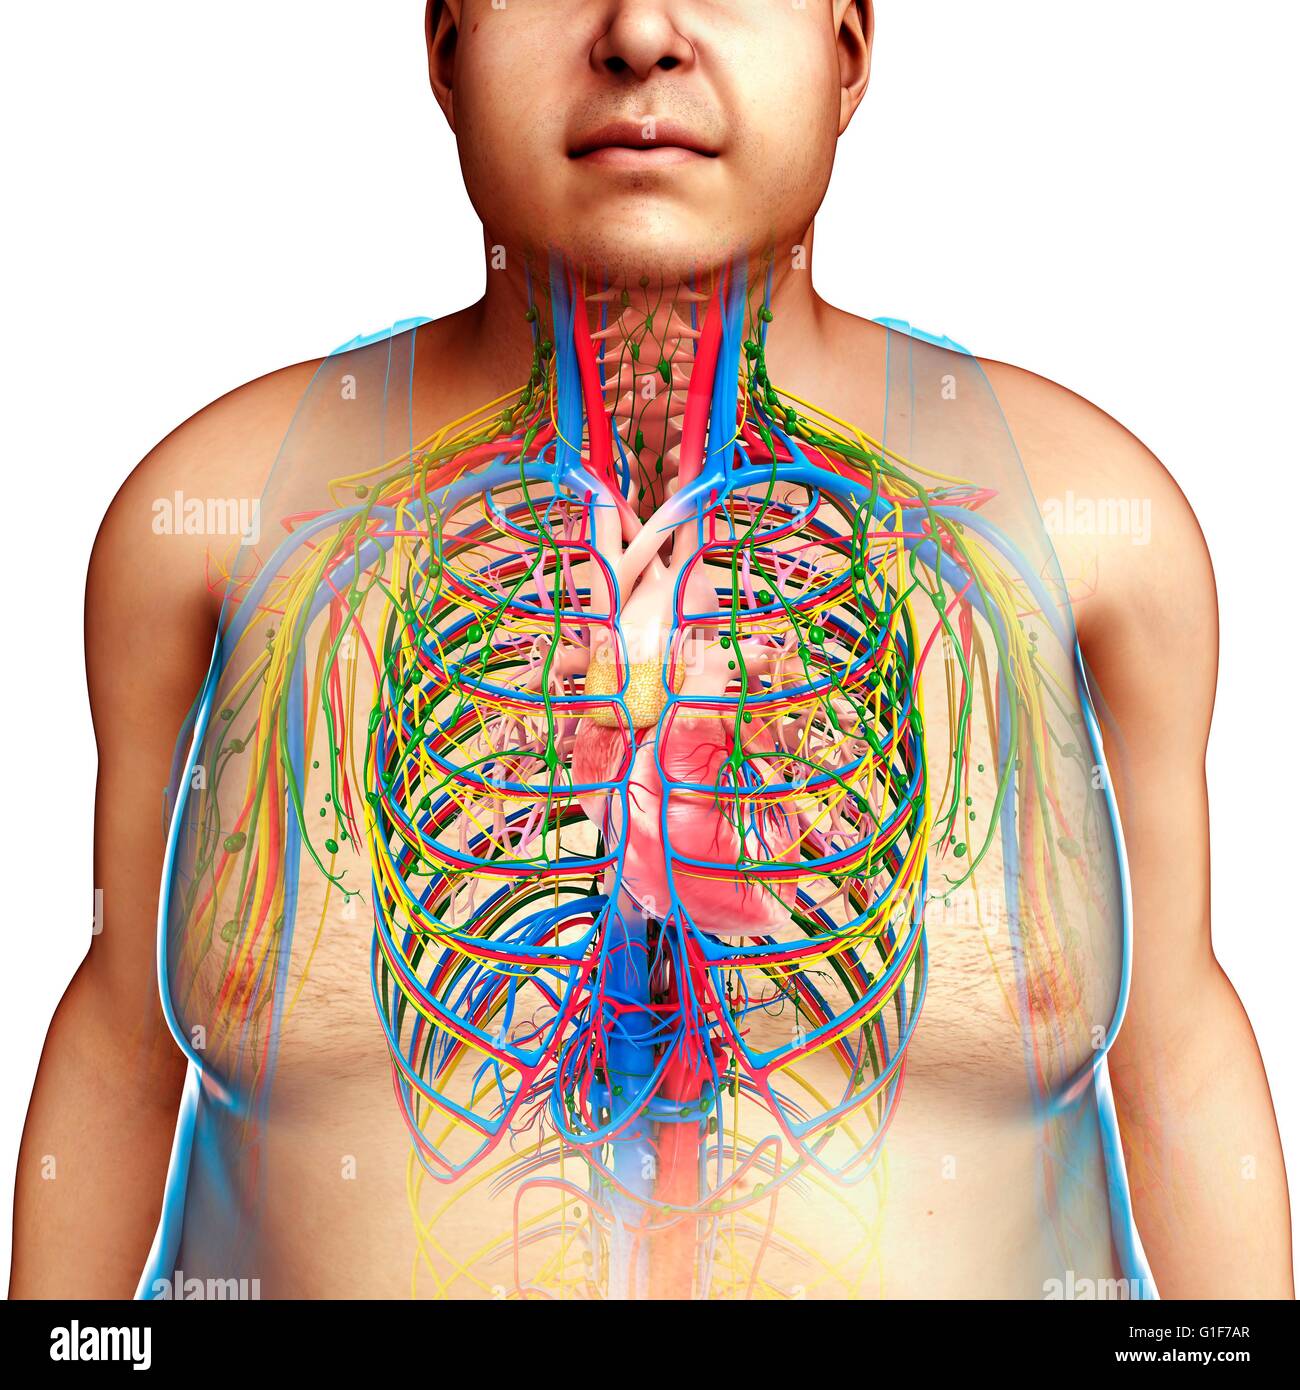 Human Organs Stock Photos & Human Organs Stock Images - Alamy